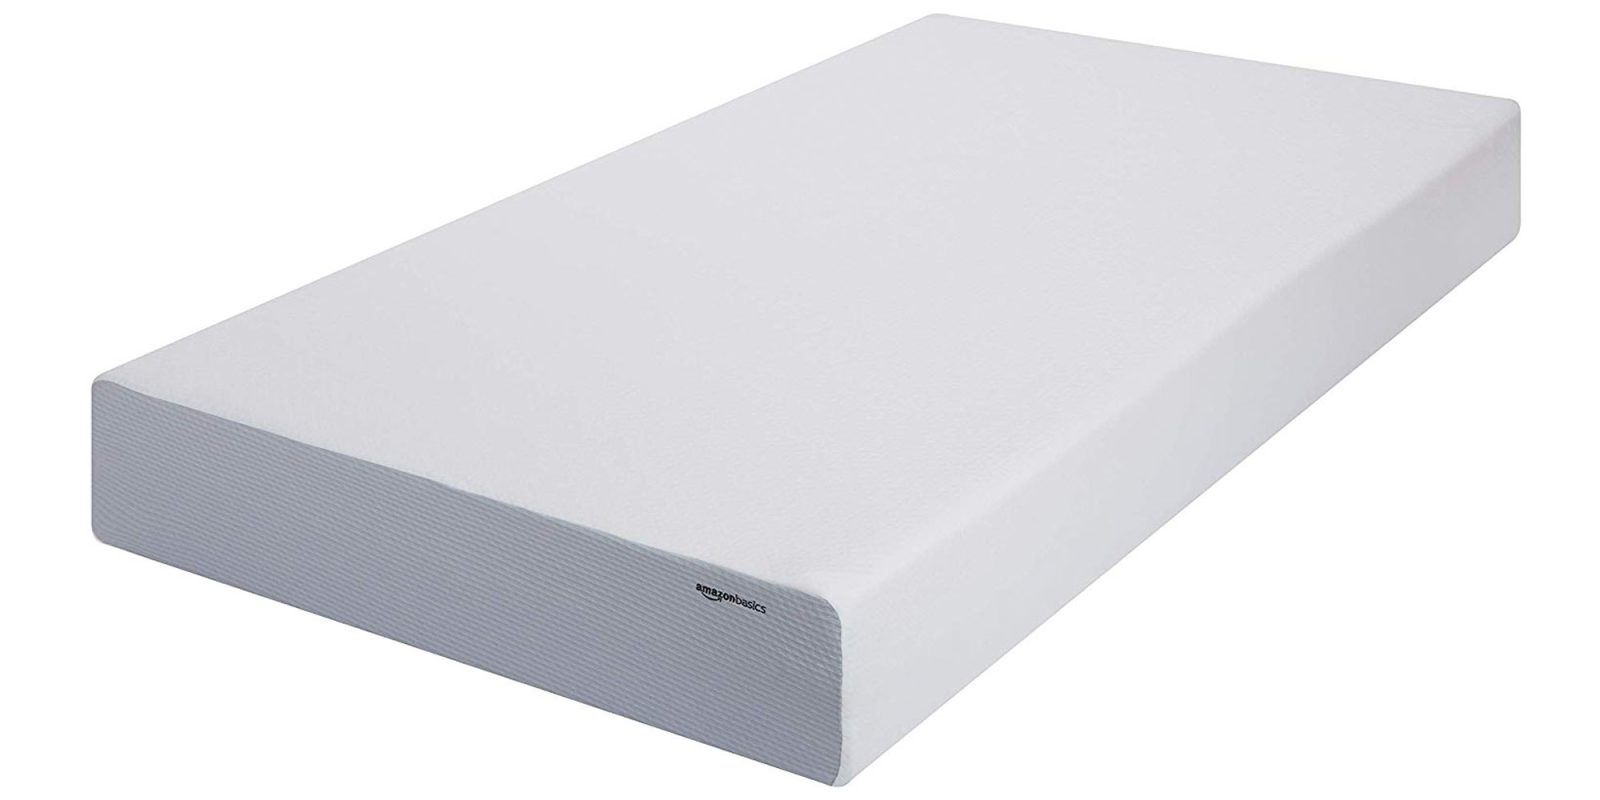 amazonbasics memory foam mattress review